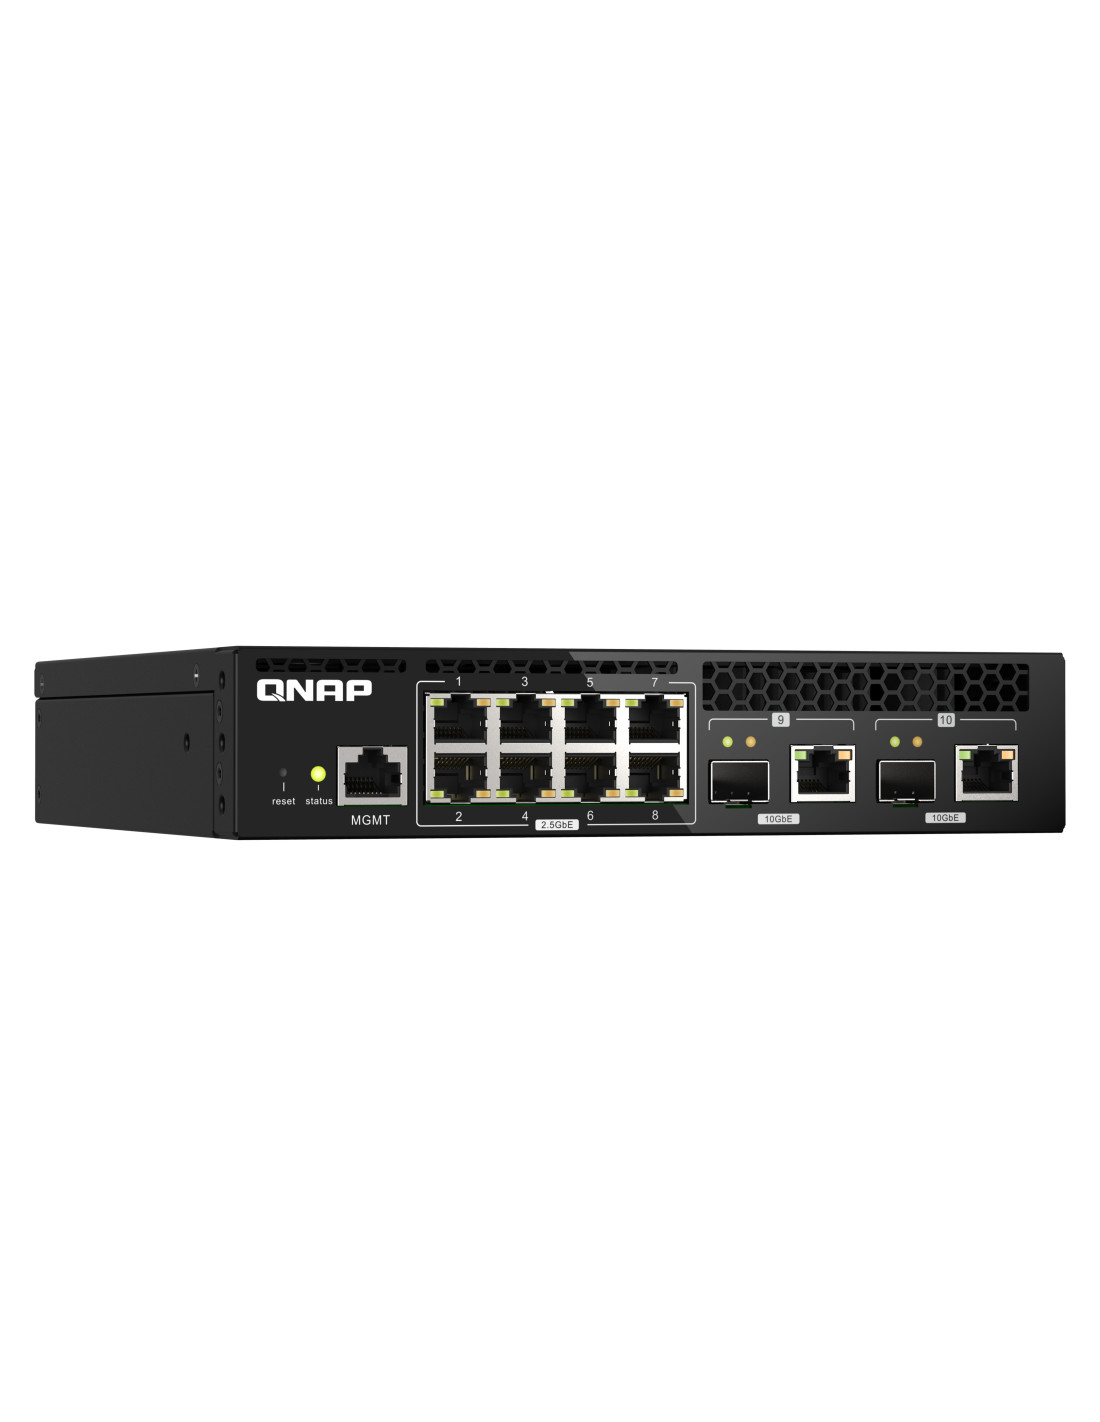  QSW-M2108R-2C Switch 10GbE - 10 puertos (8 RJ45, 2 RJ45 SFP+), agregación de puertos 802.3ad